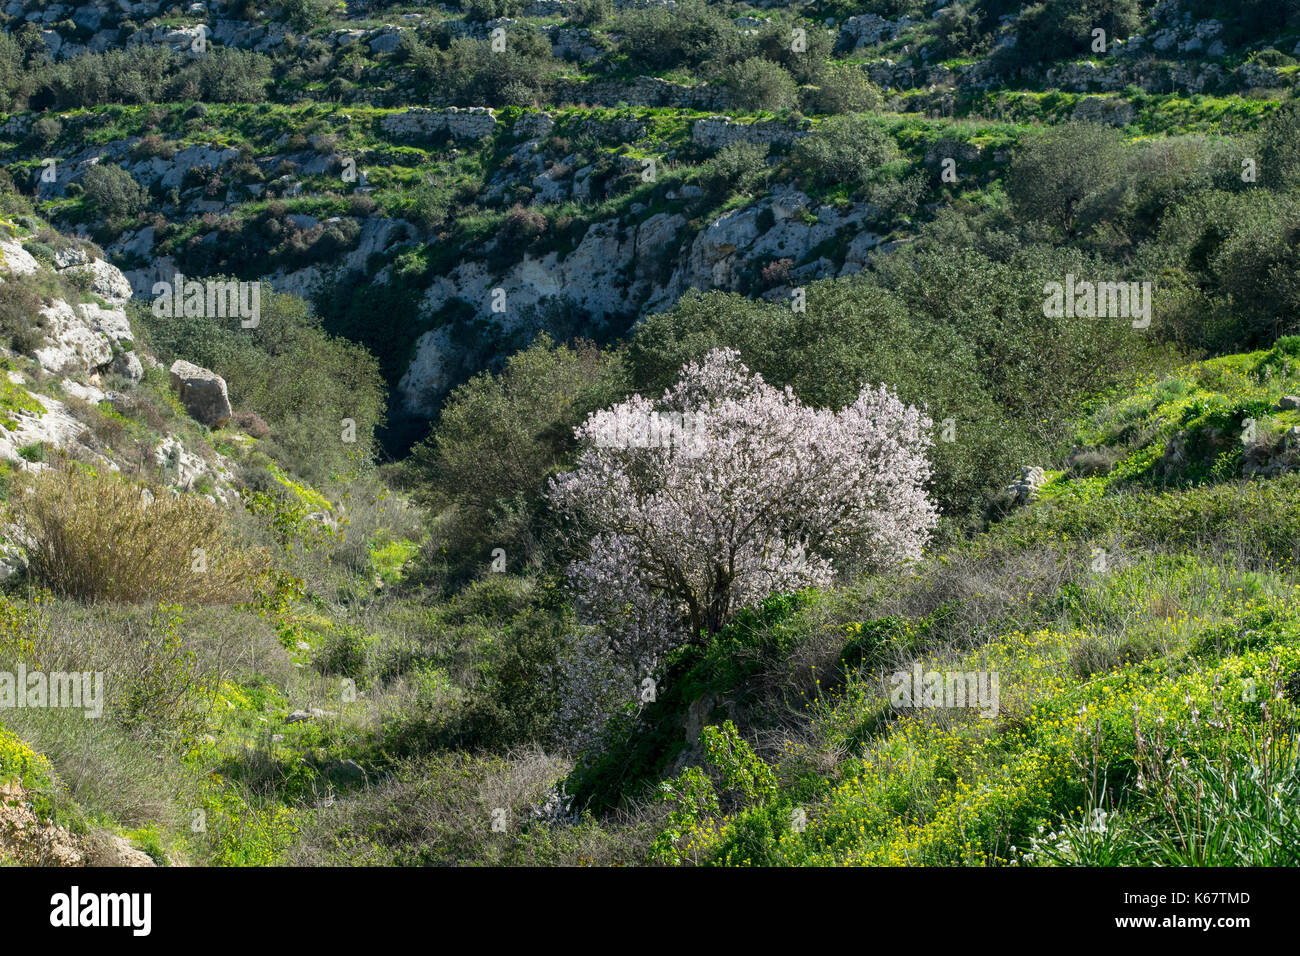 Un amandier en fleur, couvert de fleurs blanches, de se démarquer de la végétation verte dans une vallée sèche en forme de v dans la campagne maltaise, Malte Banque D'Images